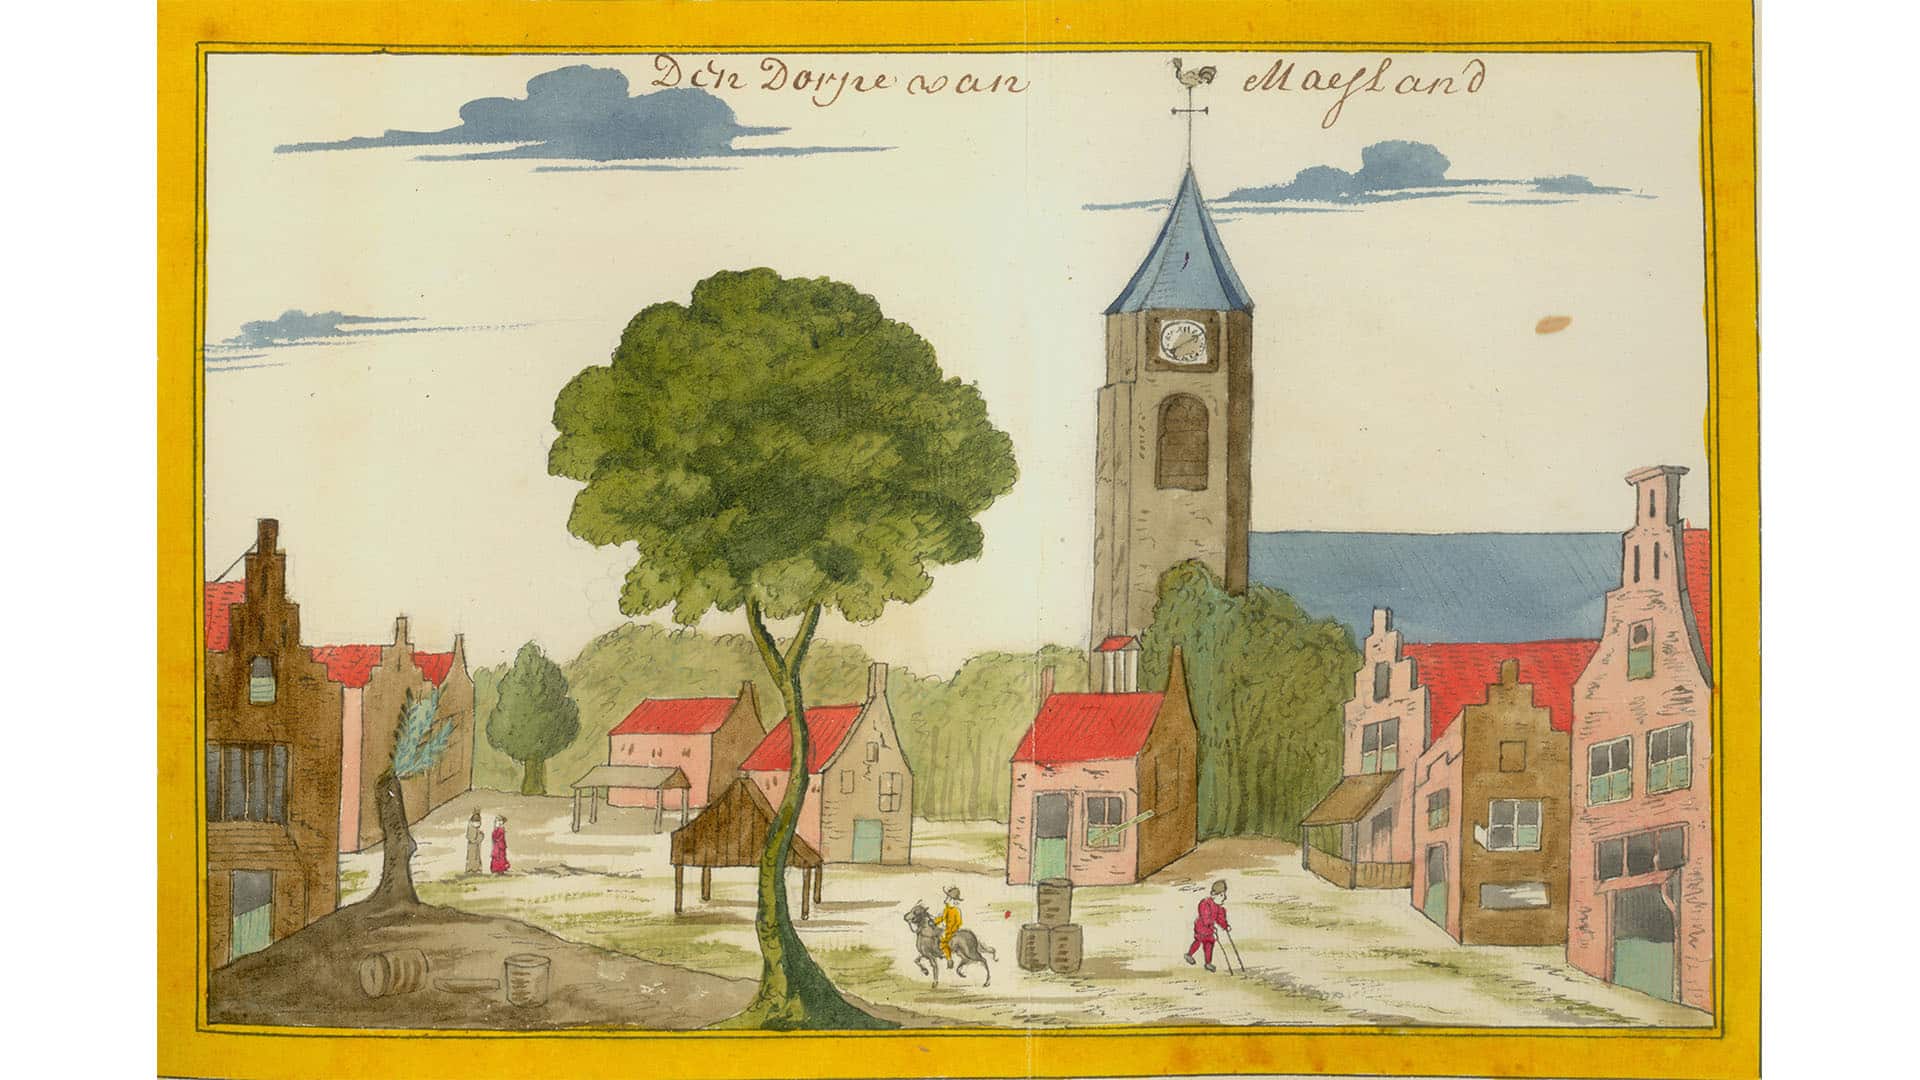 Stadgezicht van dorp Maasland uit 1700 van het Stadsarchief Delft